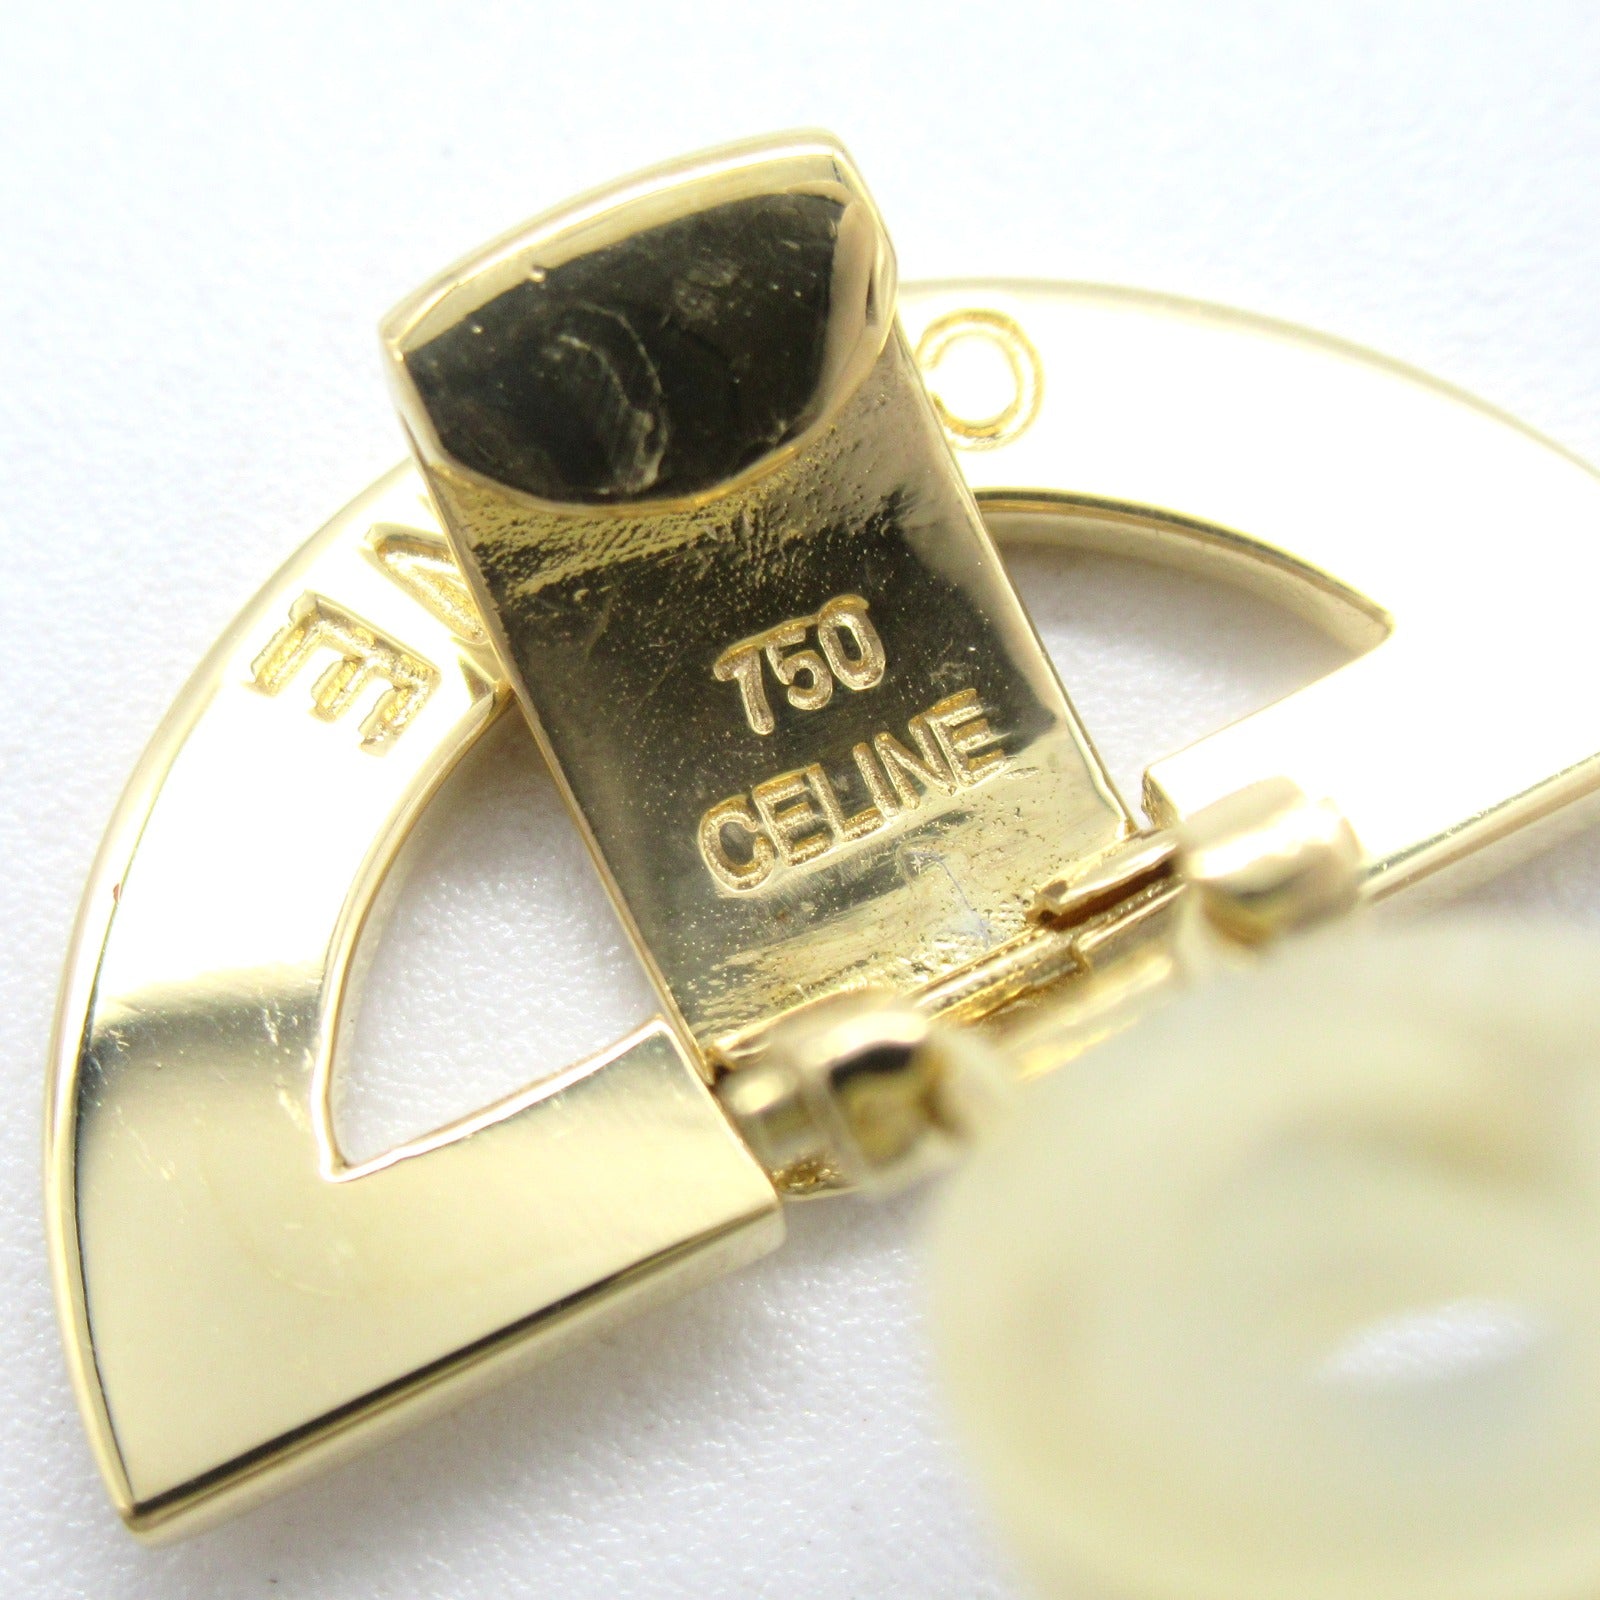 Celine Celine Swing Motif Earring Earring Jewelry K18 (Yellow G)  Gold